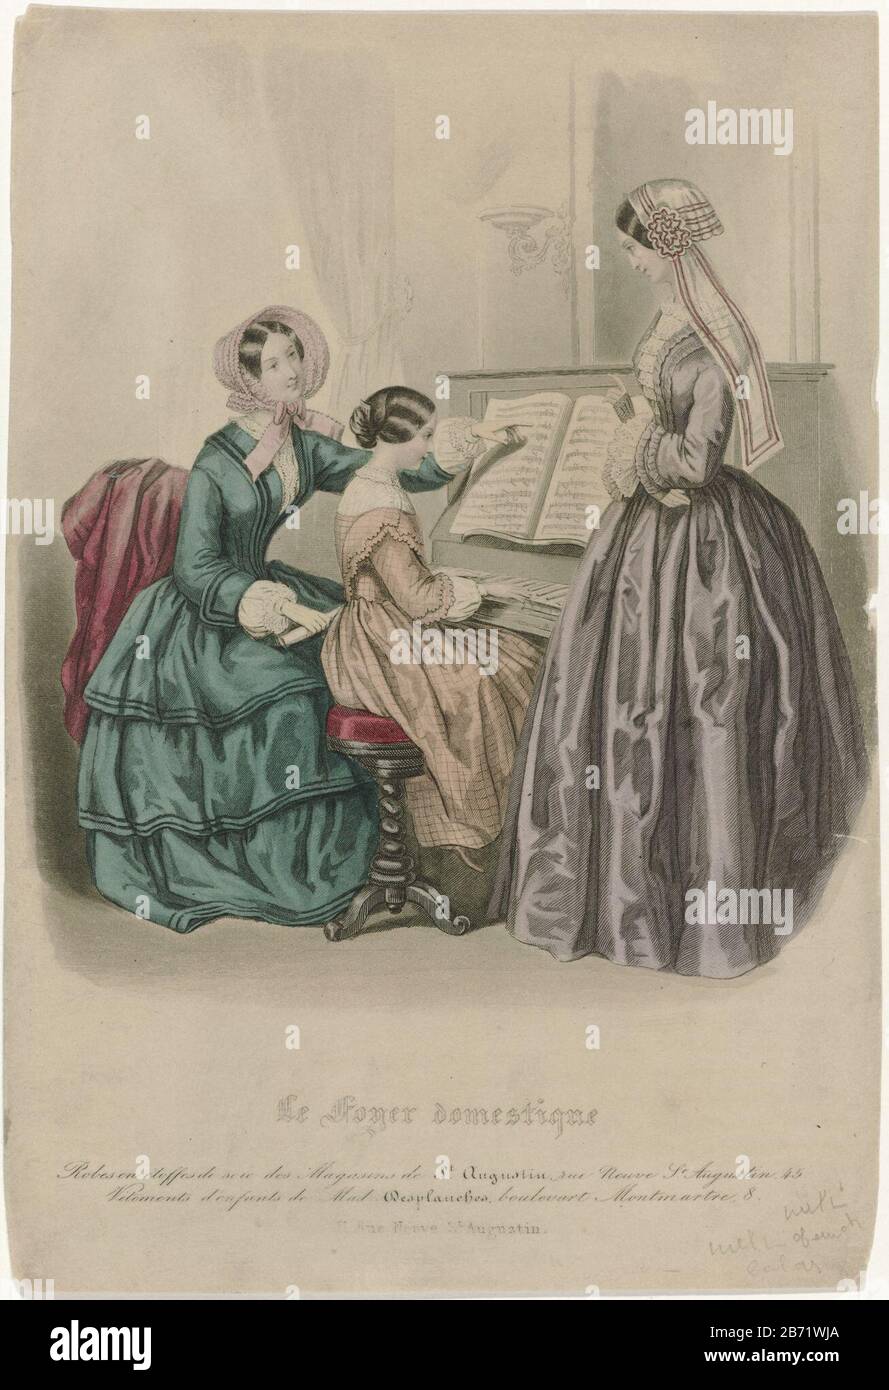 Le Foyer domestique, CA 1850 Batas en etoffes de soi () Interior con niña  detrás del piano y dos mujeres. Según la leyenda, llevan vestidos de seda  de las tiendas de San